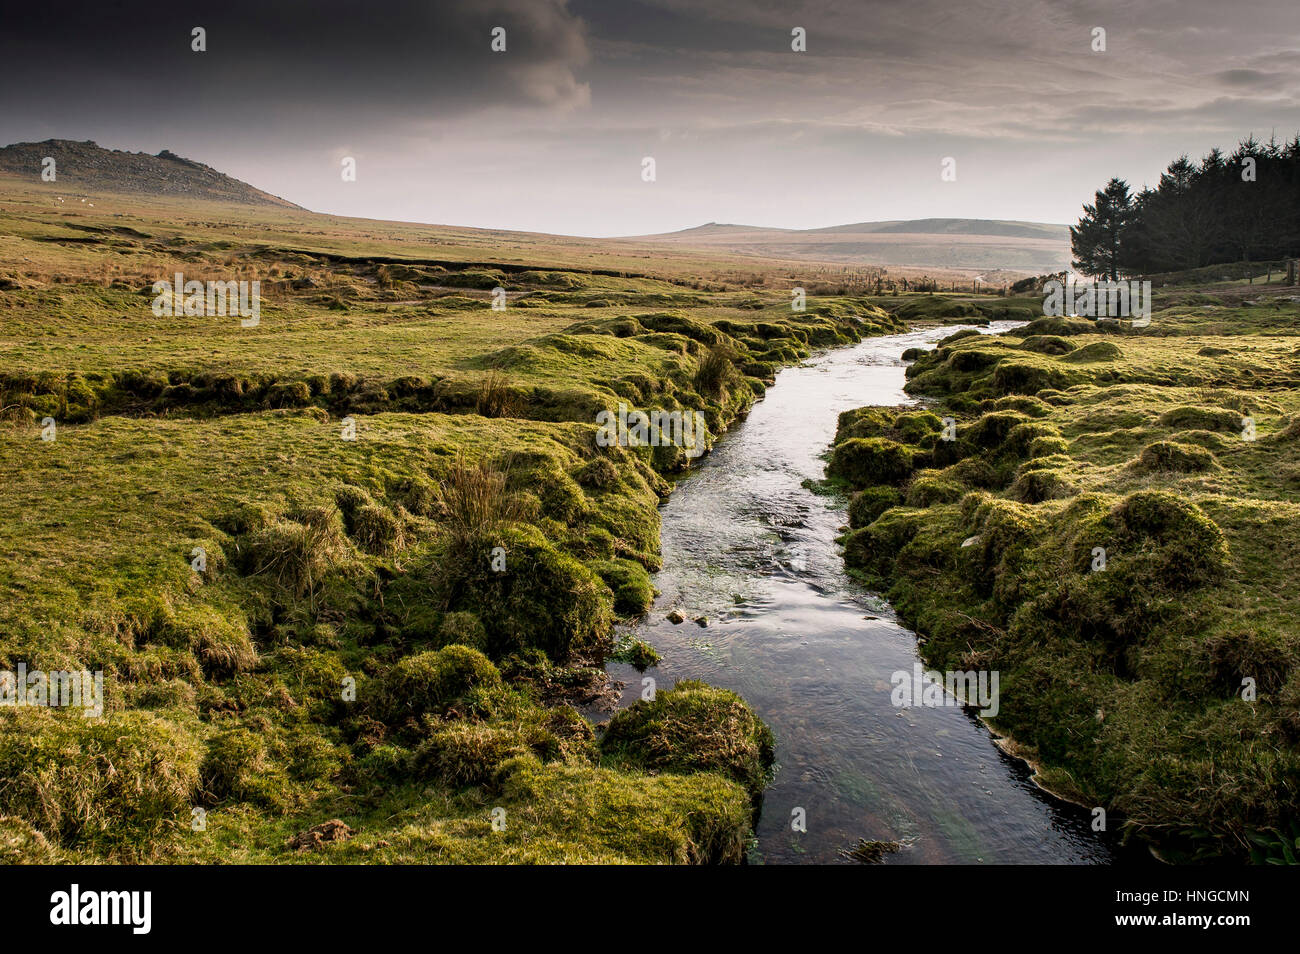 Ein kleiner Fluss läuft durch sumpfigen Boden auf grobe Tor, als ein Gebiet von außergewöhnlicher natürlicher Schönheit auf Bodmin Moor in Cornwall bezeichnet. Stockfoto